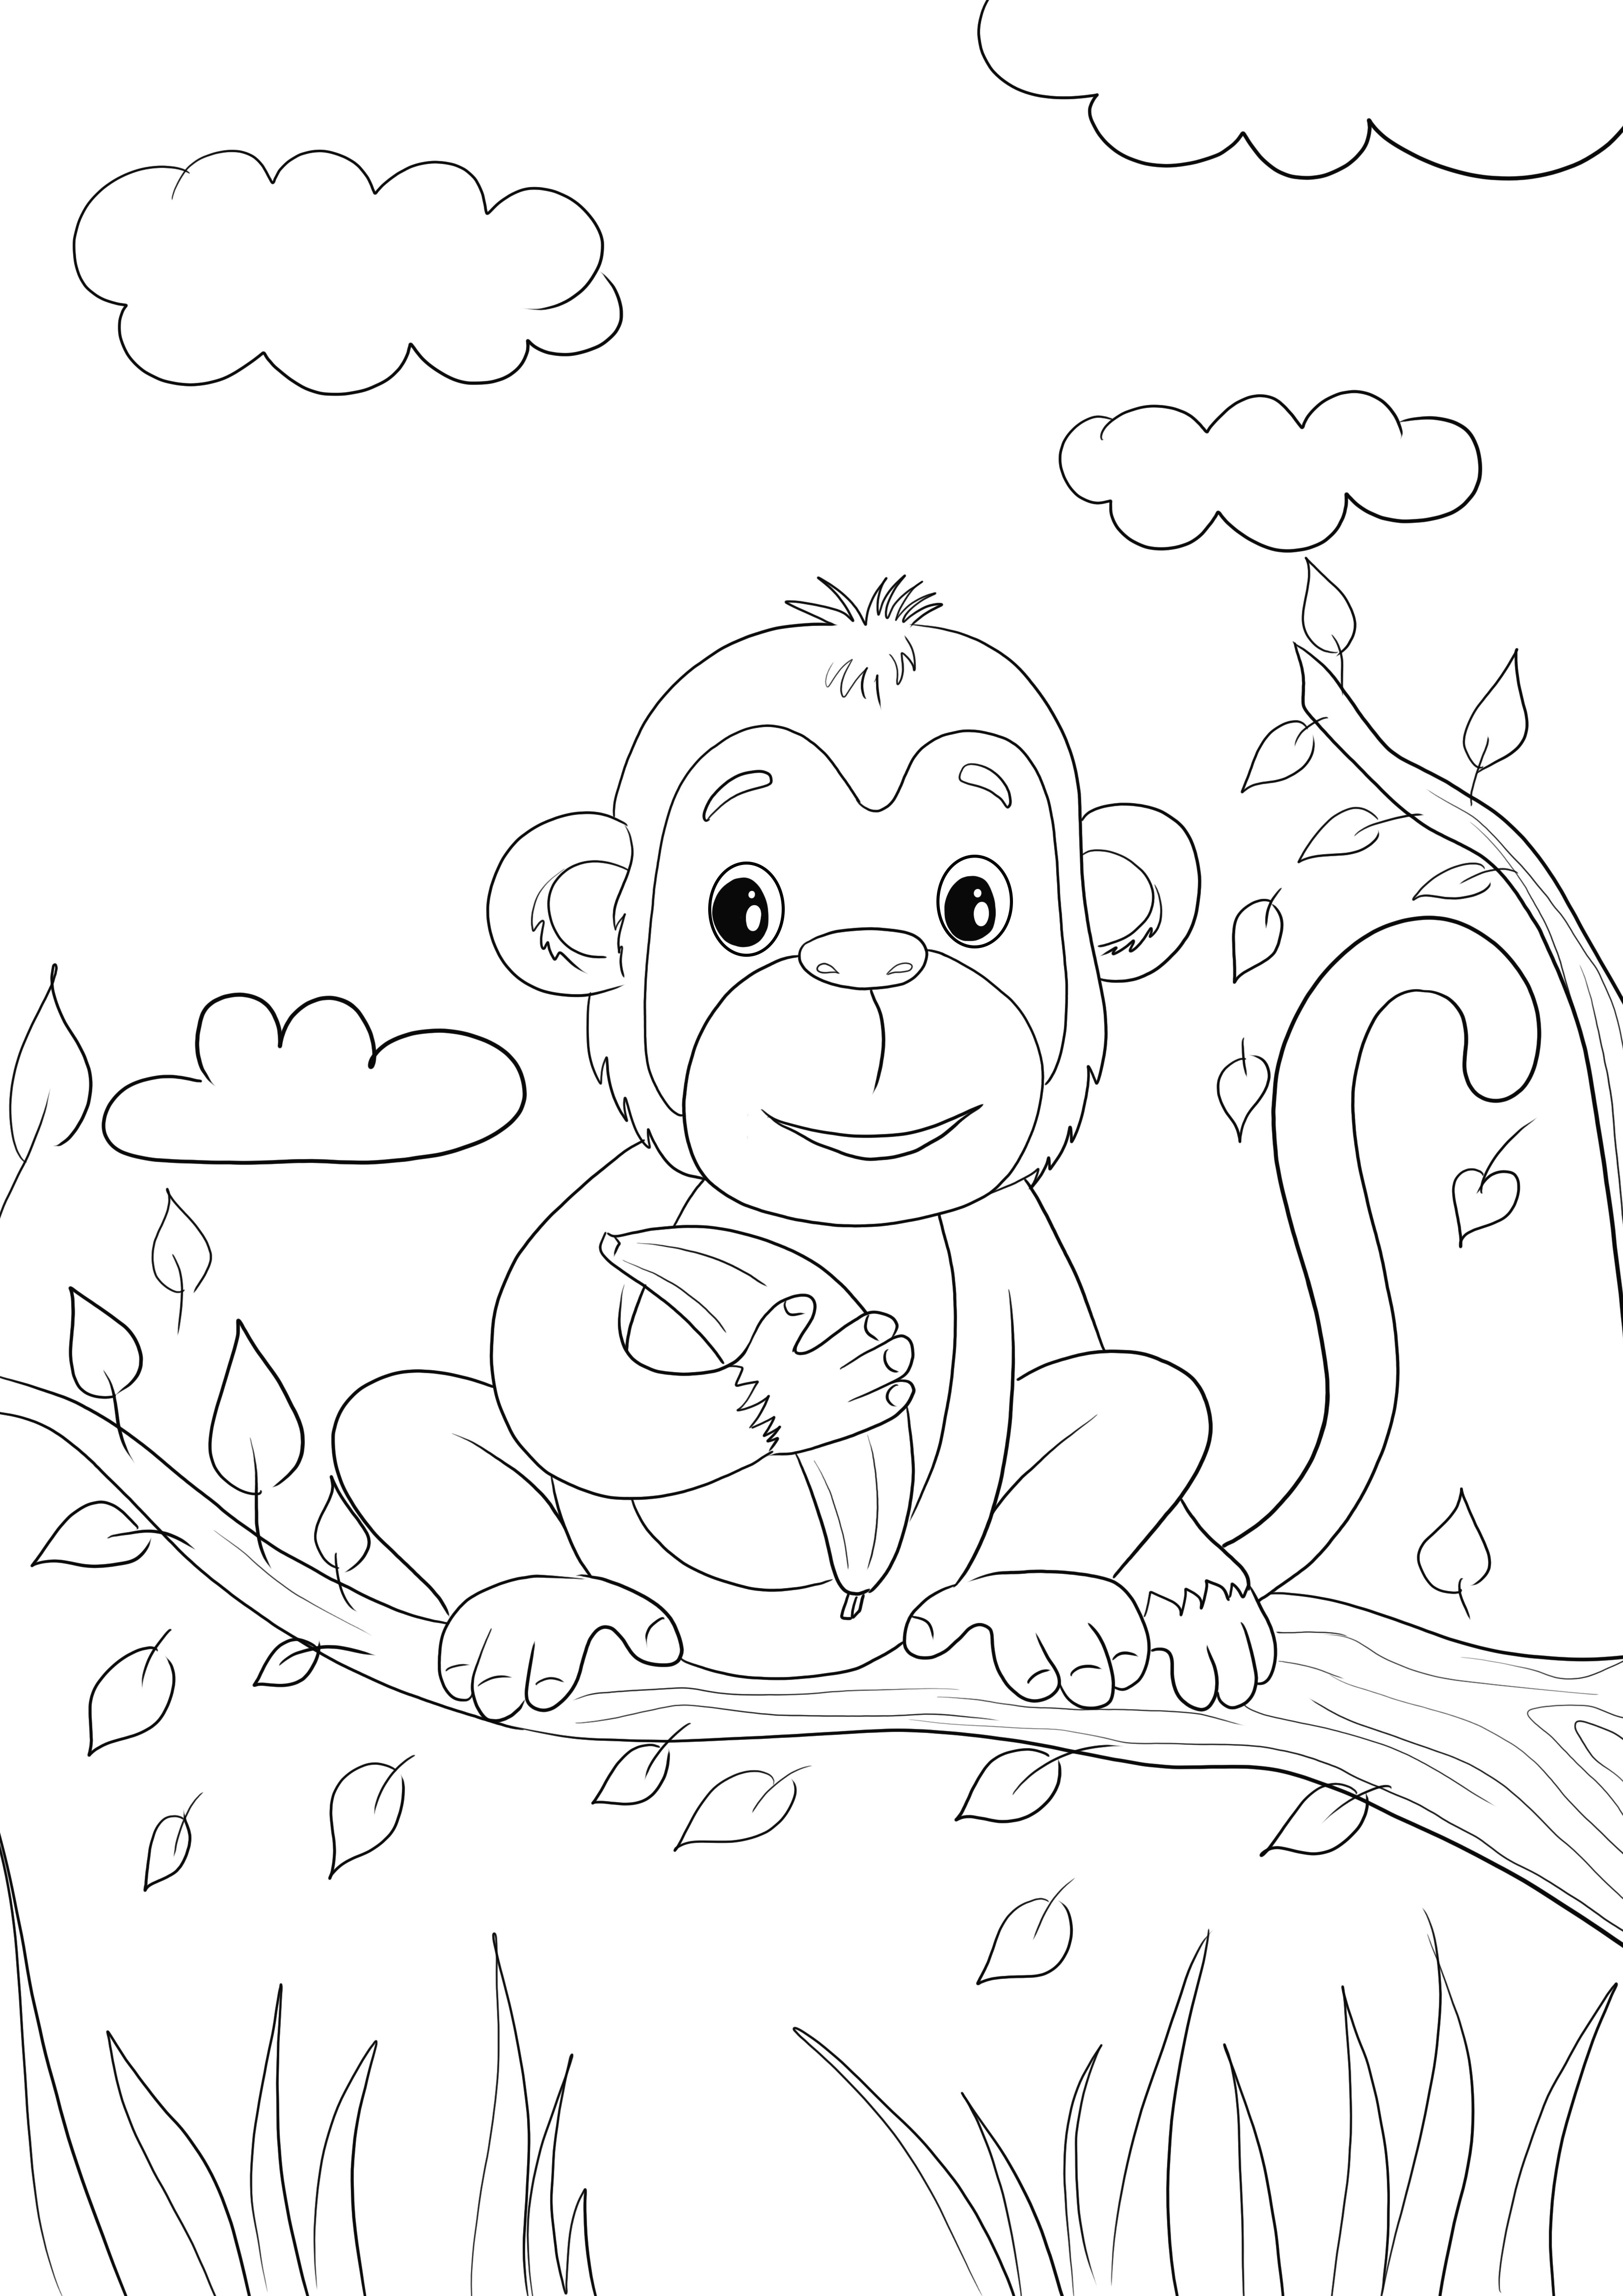 Ecco una simpatica scimmietta con in mano un'immagine da colorare di banana da stampare o salvare per dopo